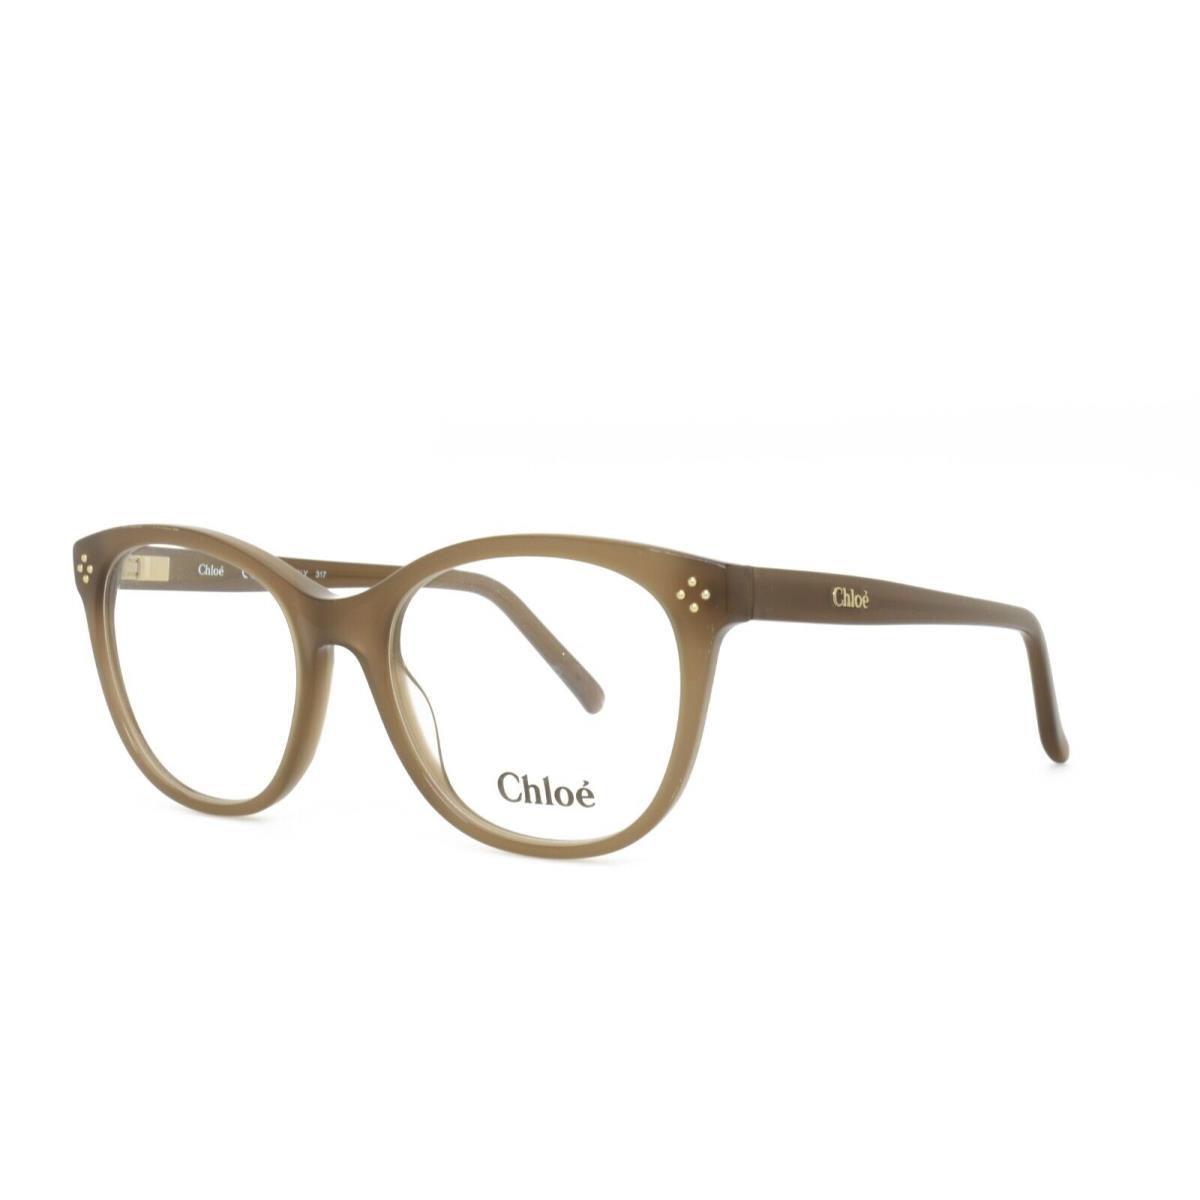 Chloe 2674 272 Eyeglasses 52-18-140 Brown - Frame: Brown